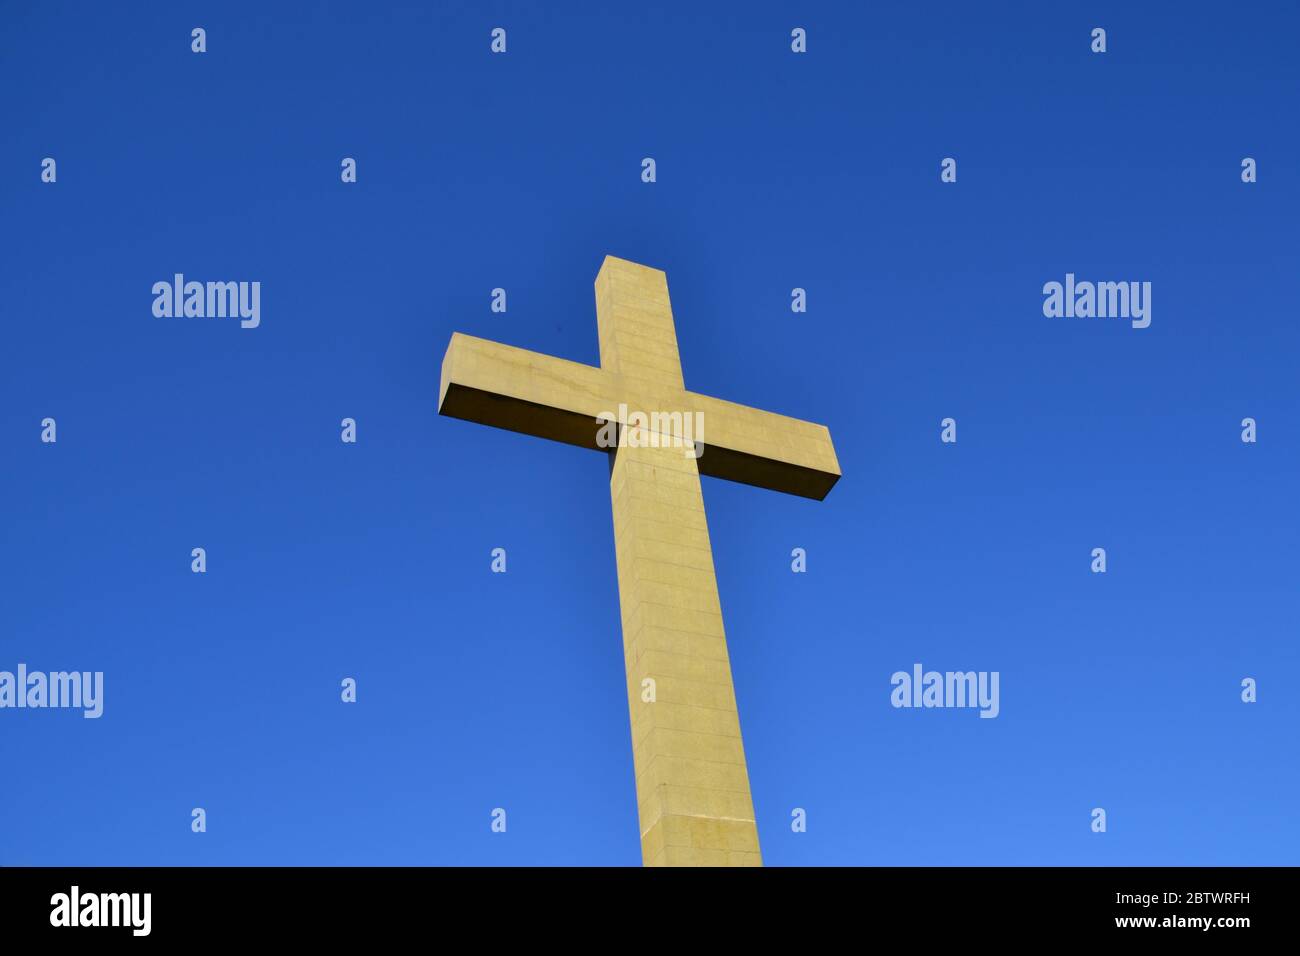 Vista de ángulo bajo de una cruz religiosa cristiana concreta contra un cielo azul cobalto claro Foto de stock